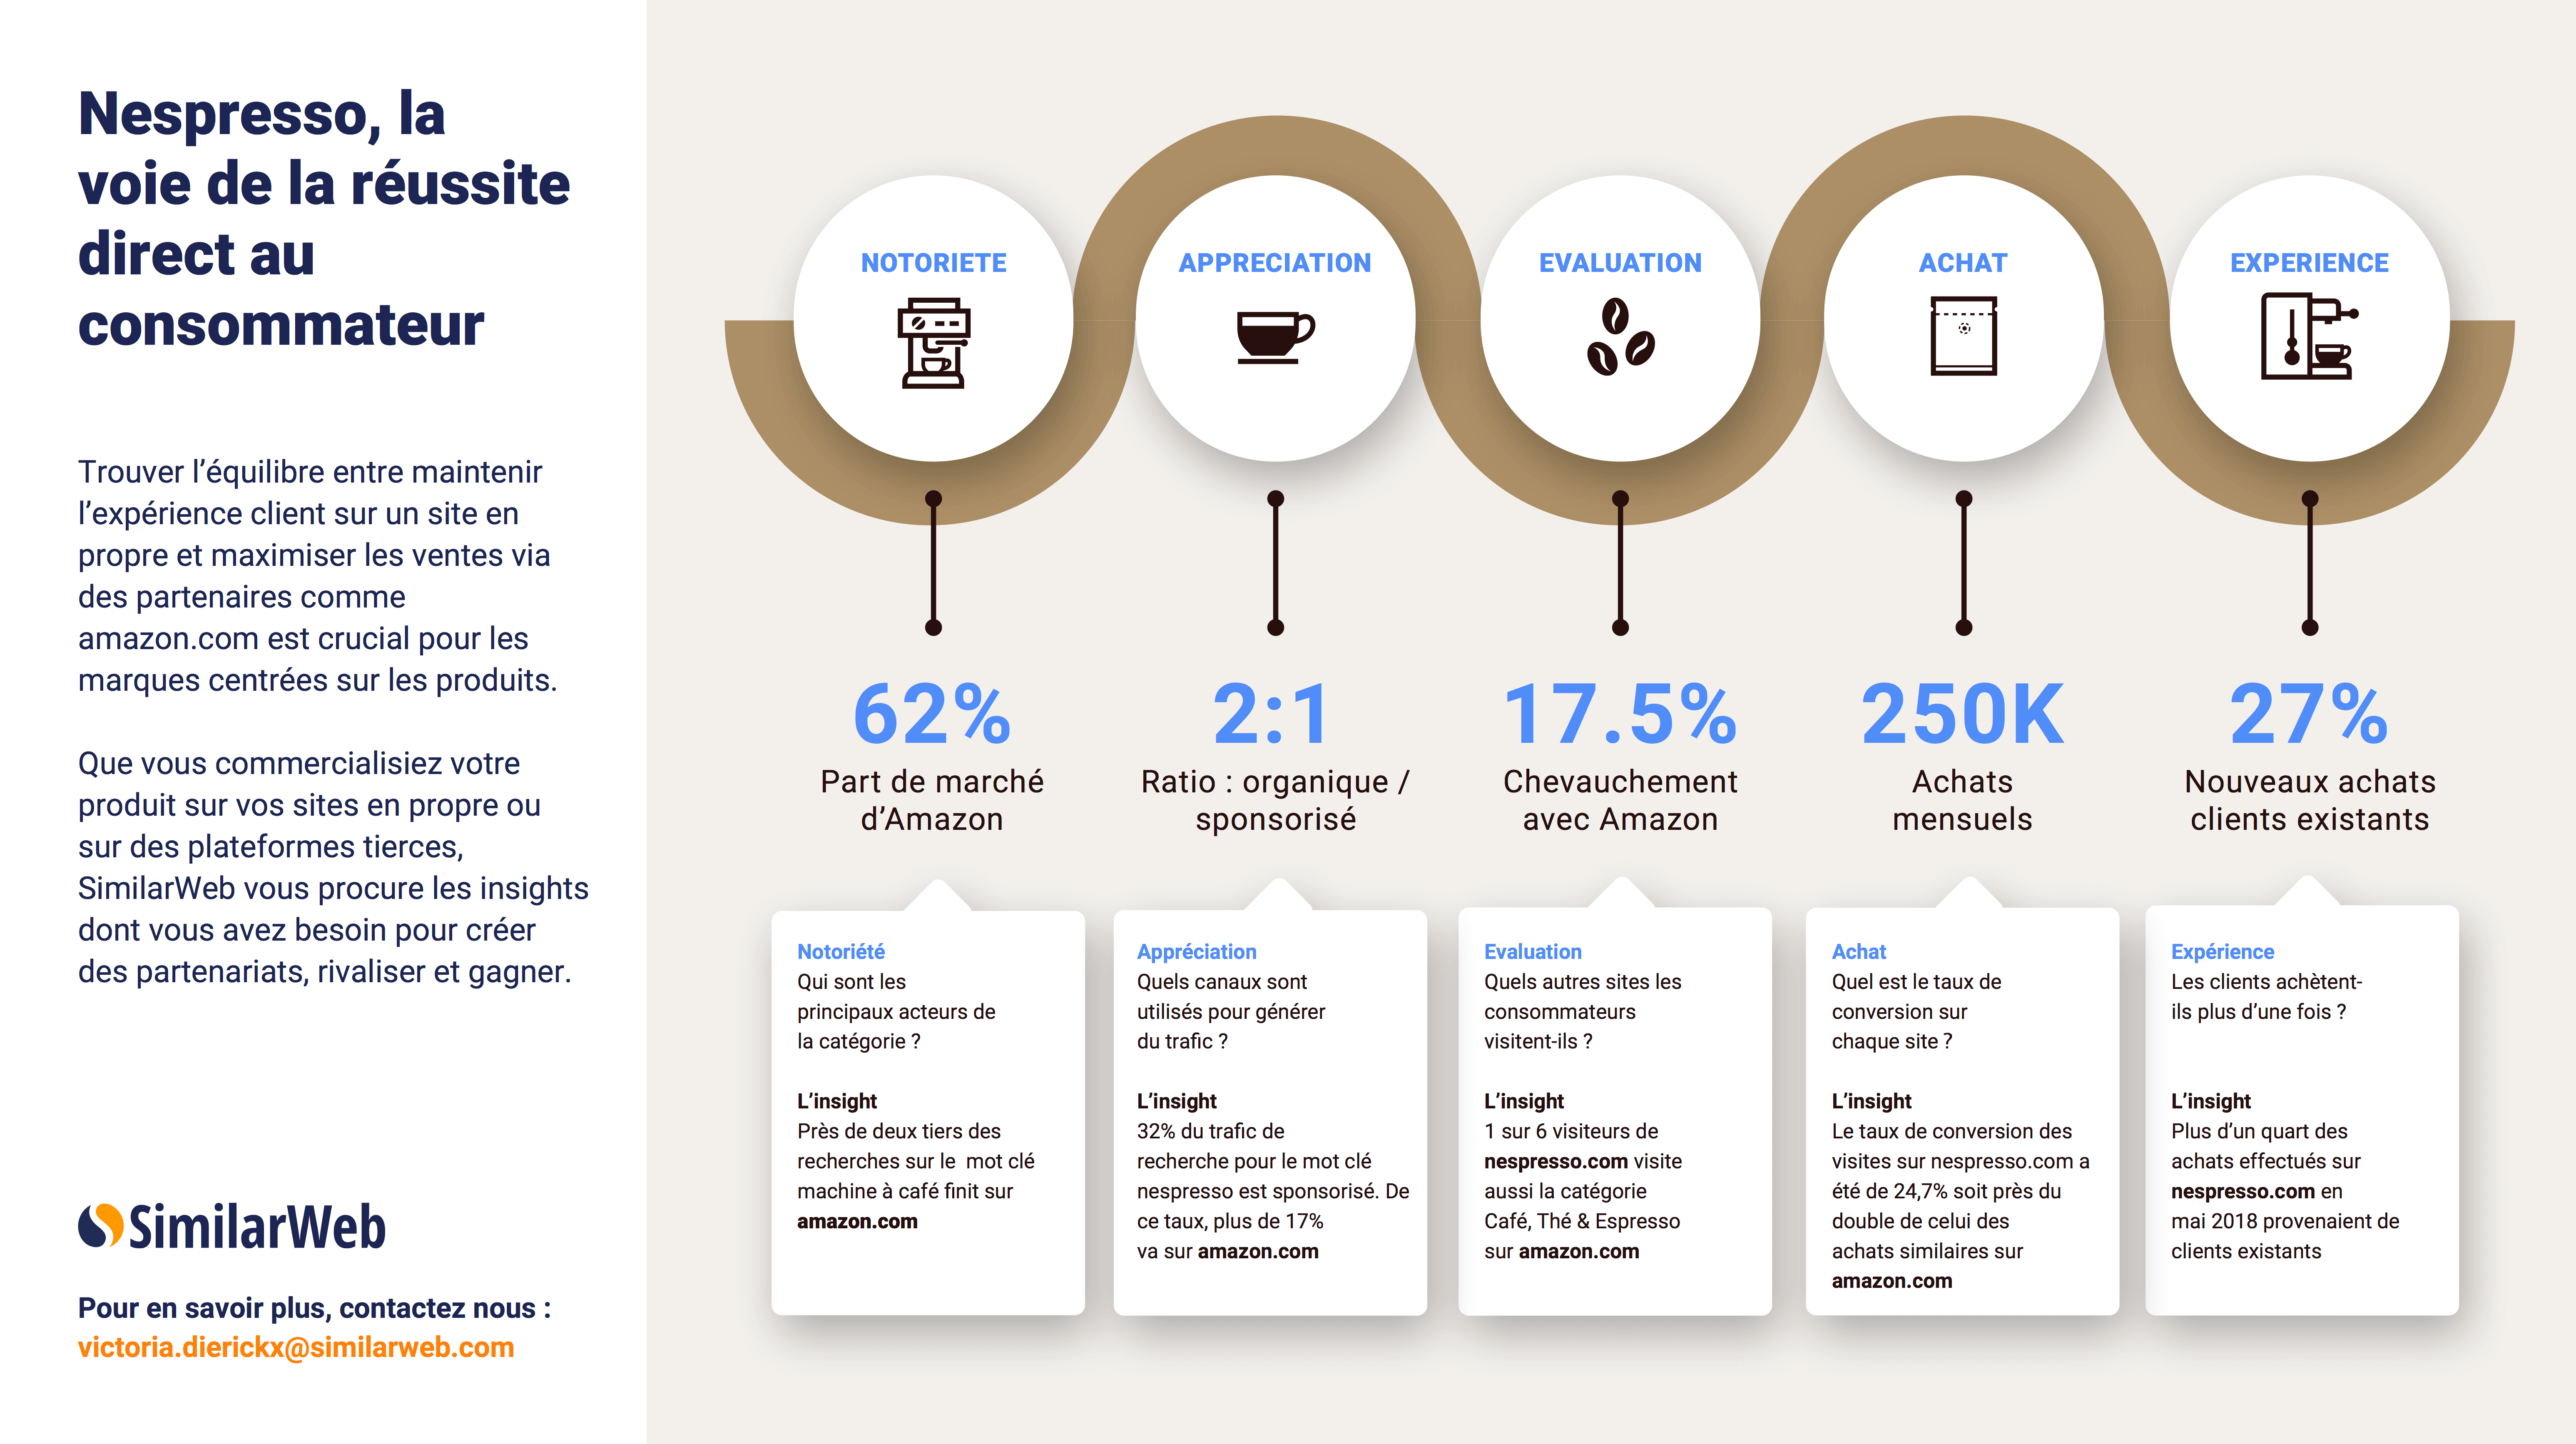 Infographie : Nespresso, la voie de la réussite du « direct au consommateur »